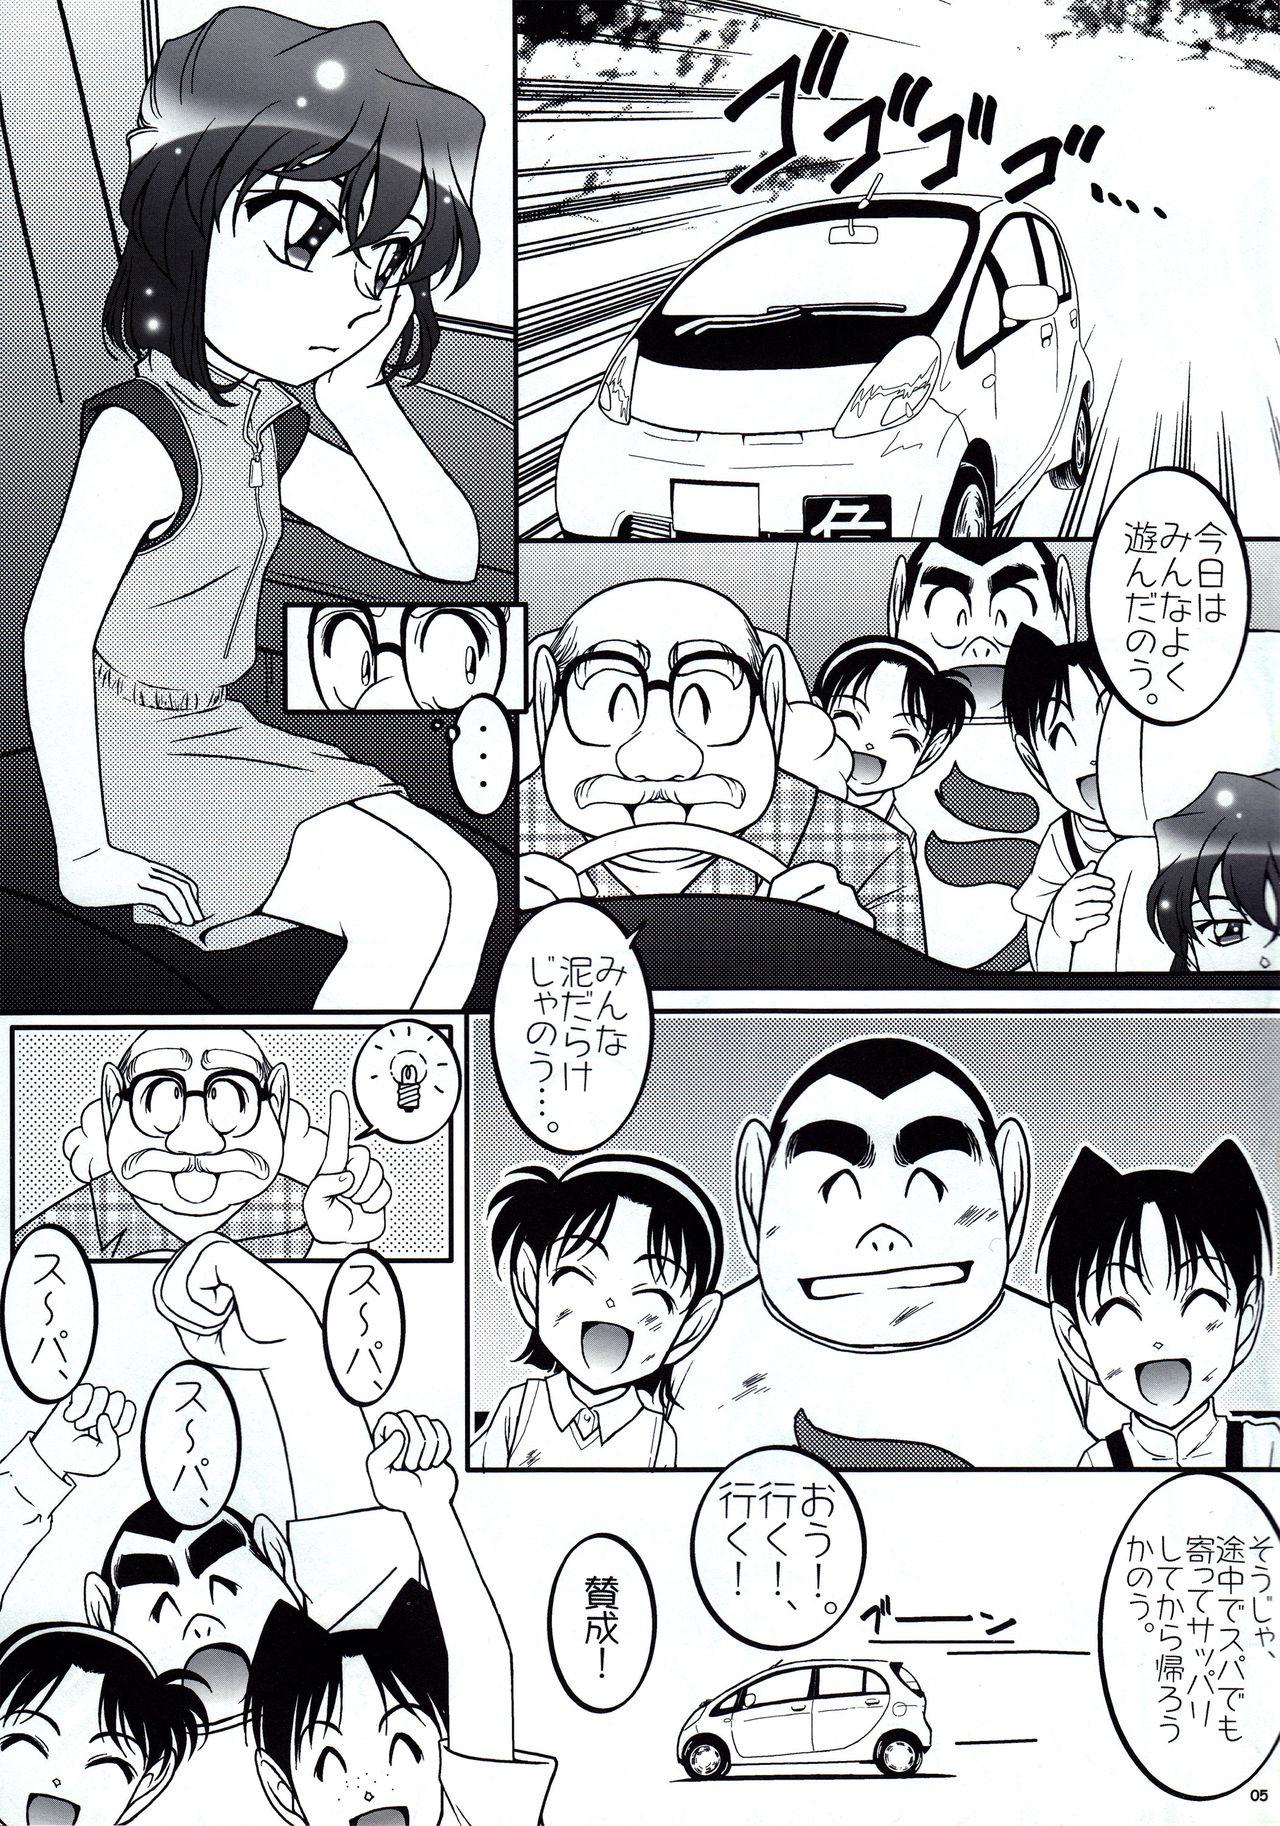 Eating Otoko yu de Dokkiri! EP0 - Detective conan Foda - Page 4